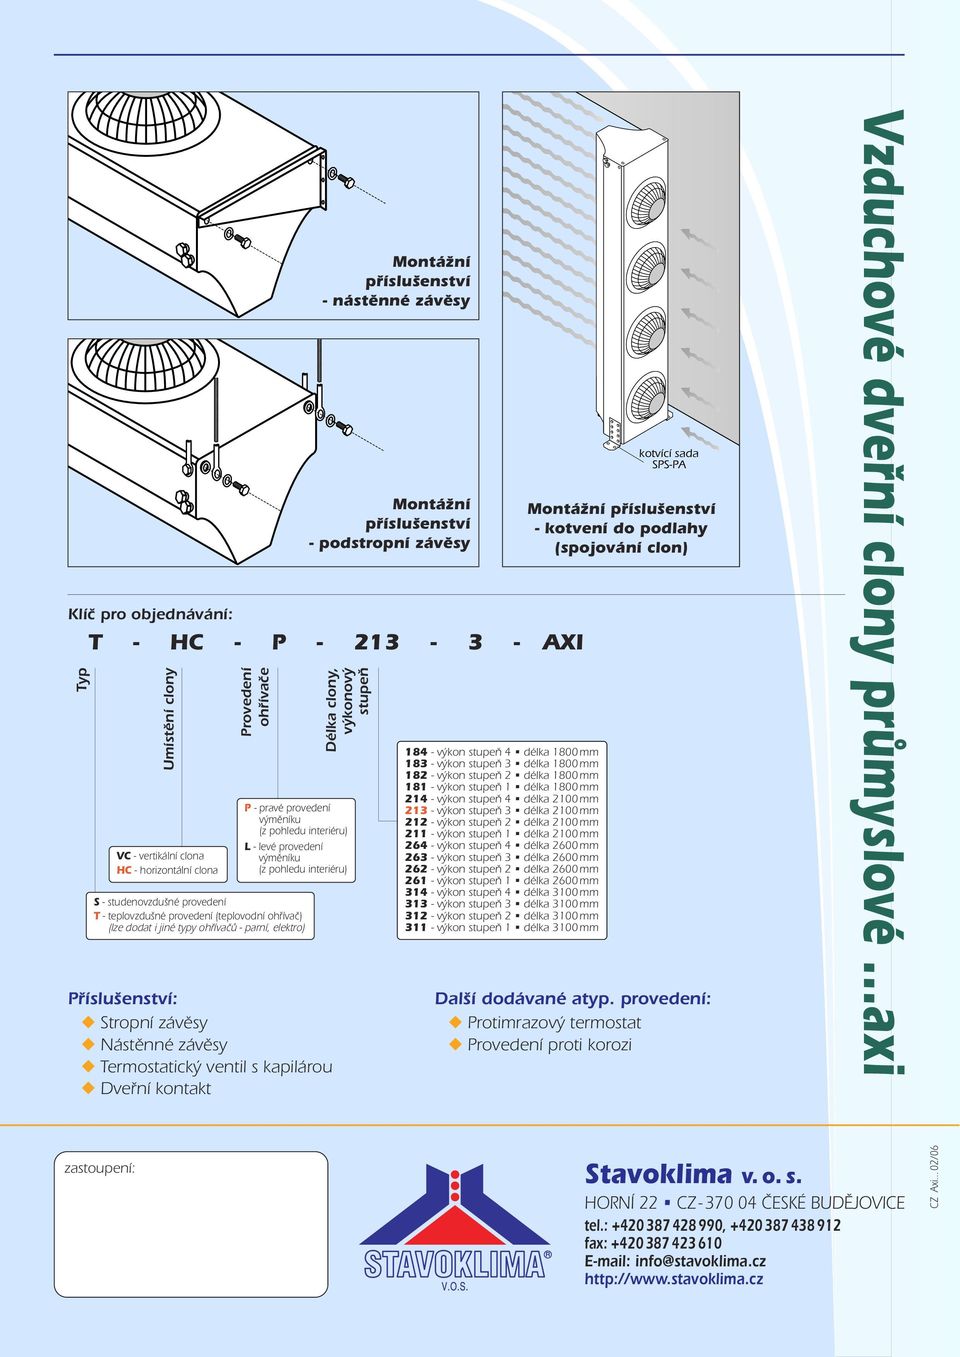 Příslušenství: Stropní závěsy Nástěnné závěsy Termostatický ventil s kapilárou Dveřní kontakt Montážní příslušenství - nástěnné závěsy Montážní příslušenství - podstropní závěsy 184 - výkon stupeň 4